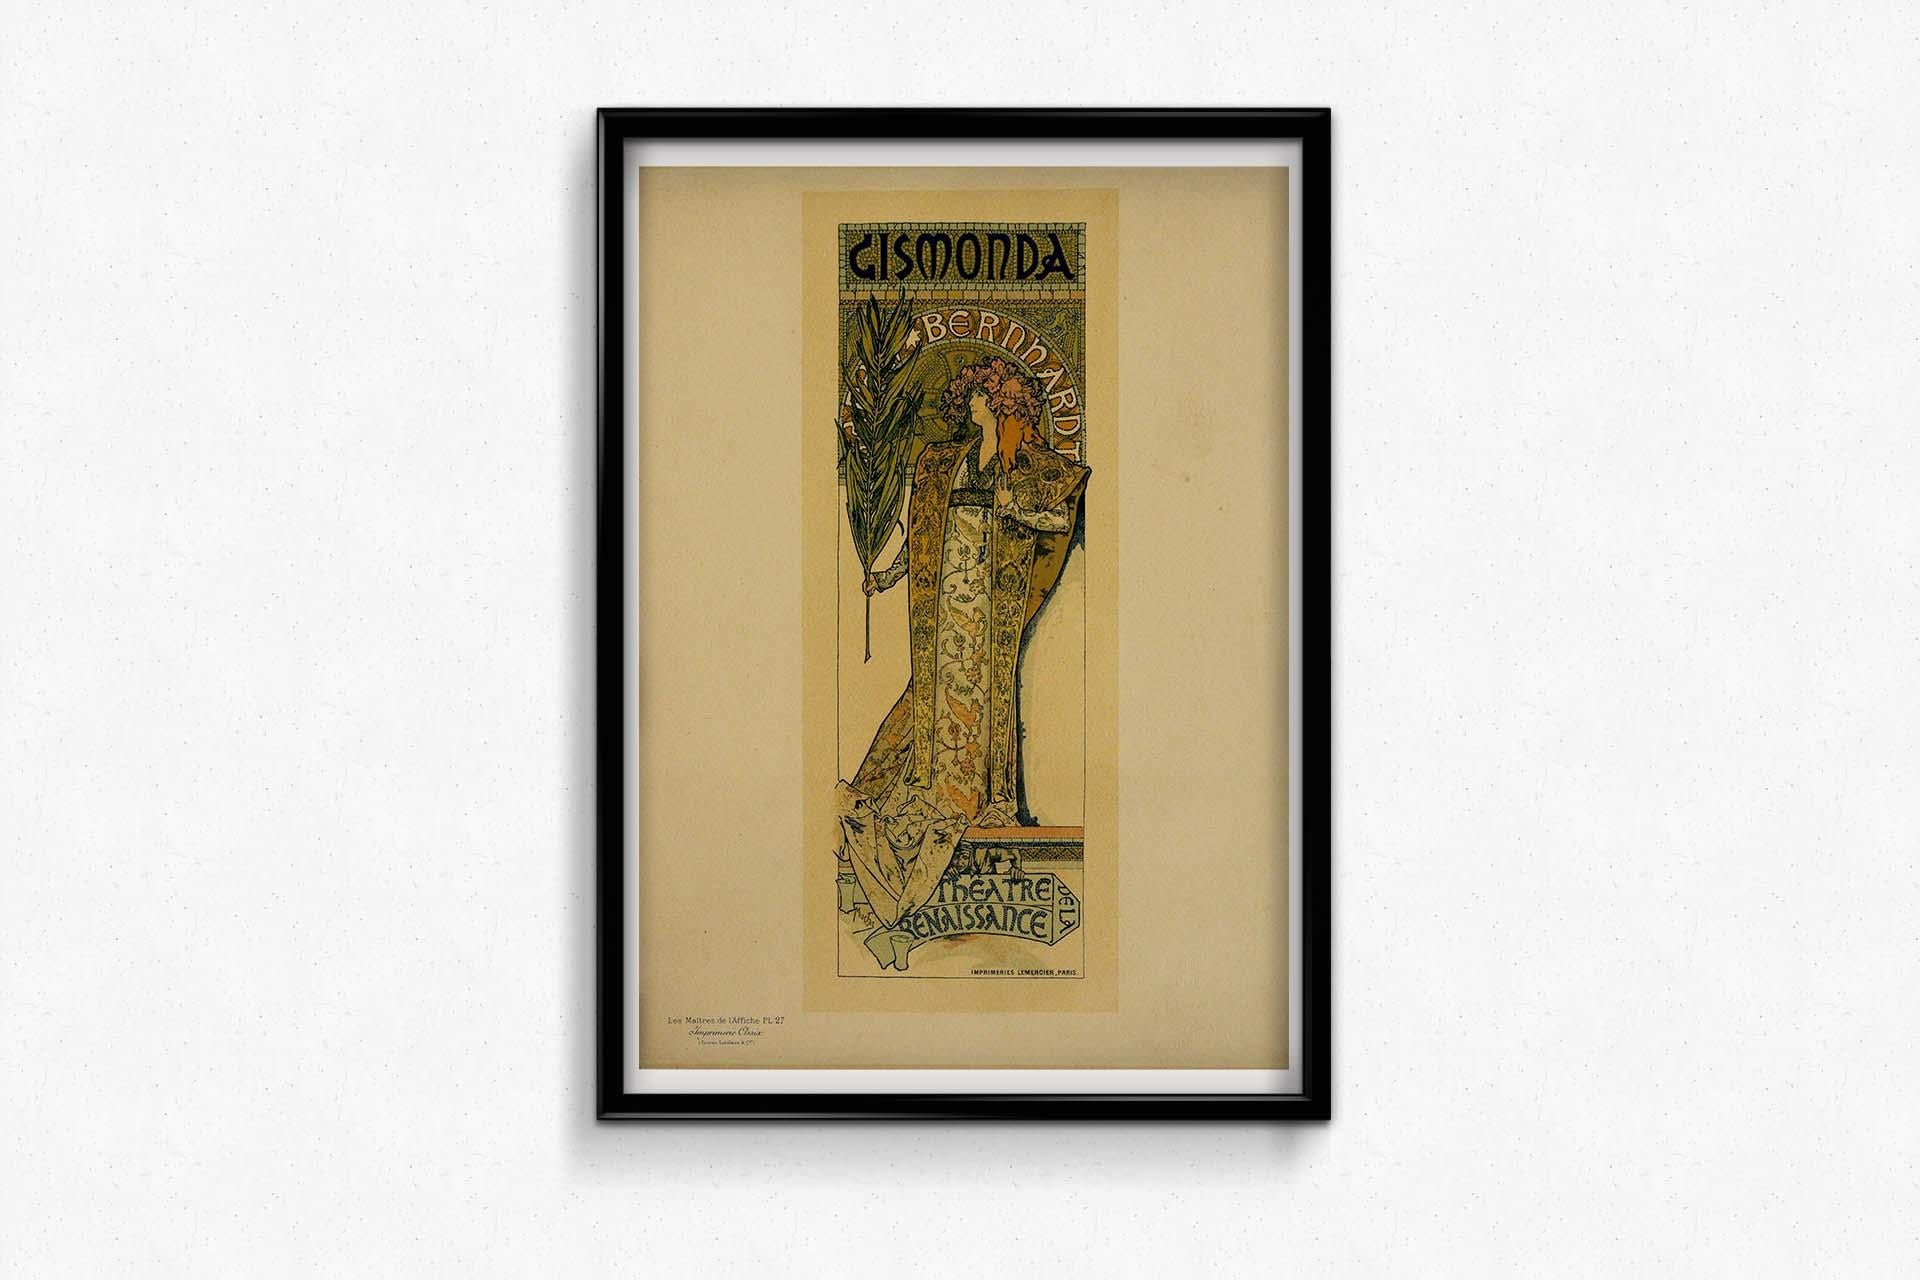 Affiche de 1898 Mucha Gismondo - Les Maîtres de l'affiche Pl.27 - Art nouveau Print par Alphonse Mucha